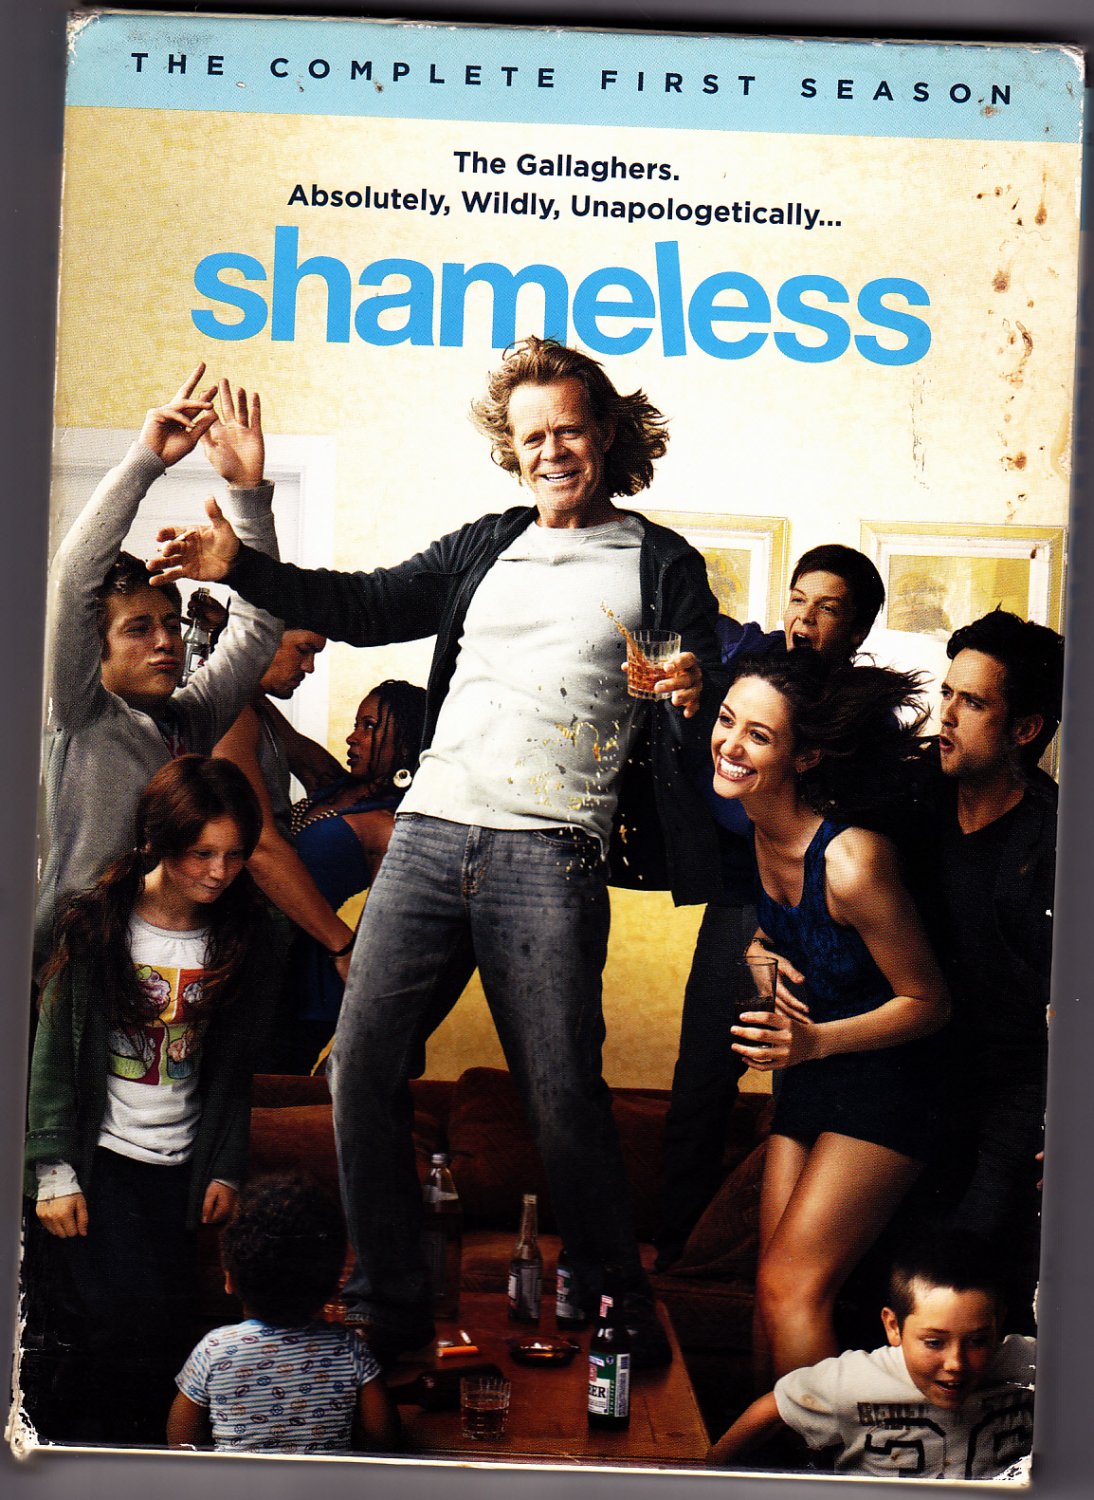 Shameless - Complete 1st Season 2011 DVD - Very Good